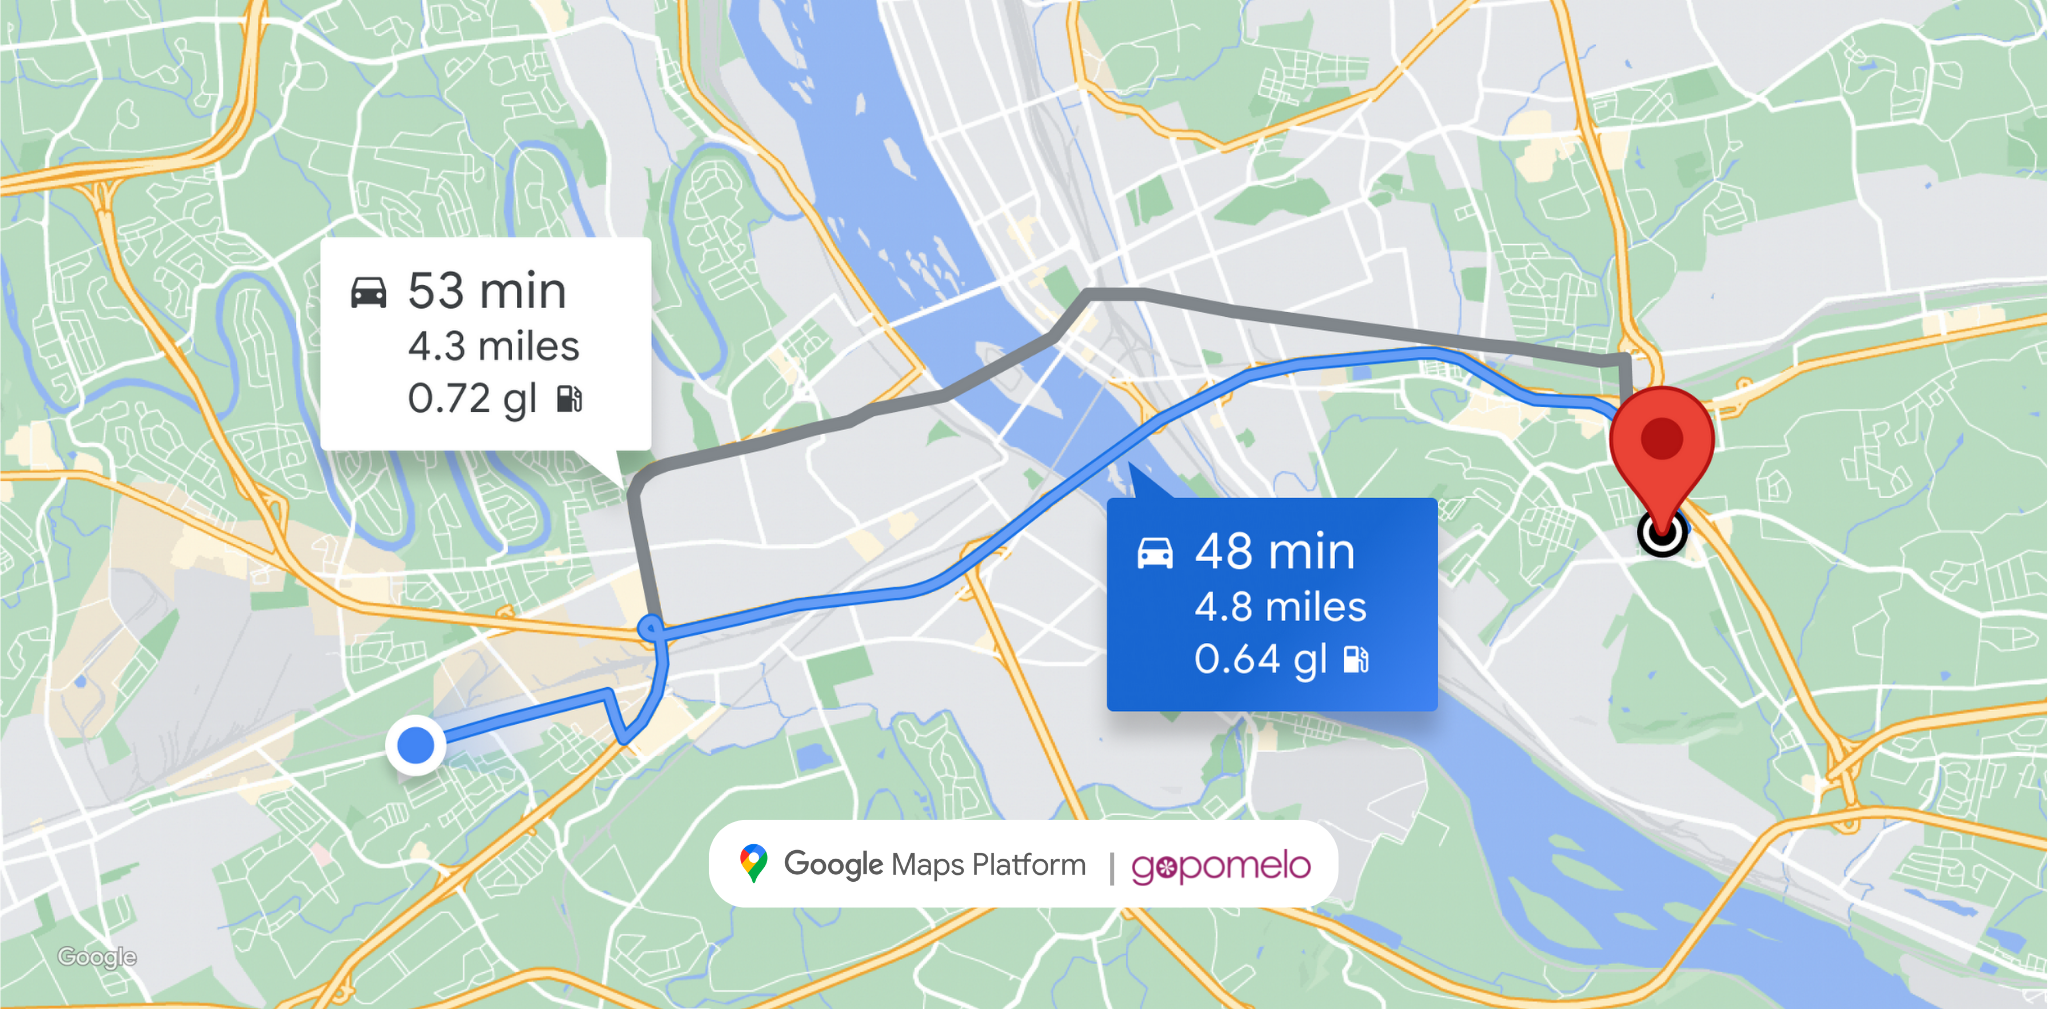 Google ประกาศฟีเจอร์ใหม่บน Google Maps Platform เพื่อสนับสนุนการกำหนดเส้นทางที่เป็นมิตรกับสิ่งแวดล้อม นำไปสู่ความยั่งยืนมากขึ้น